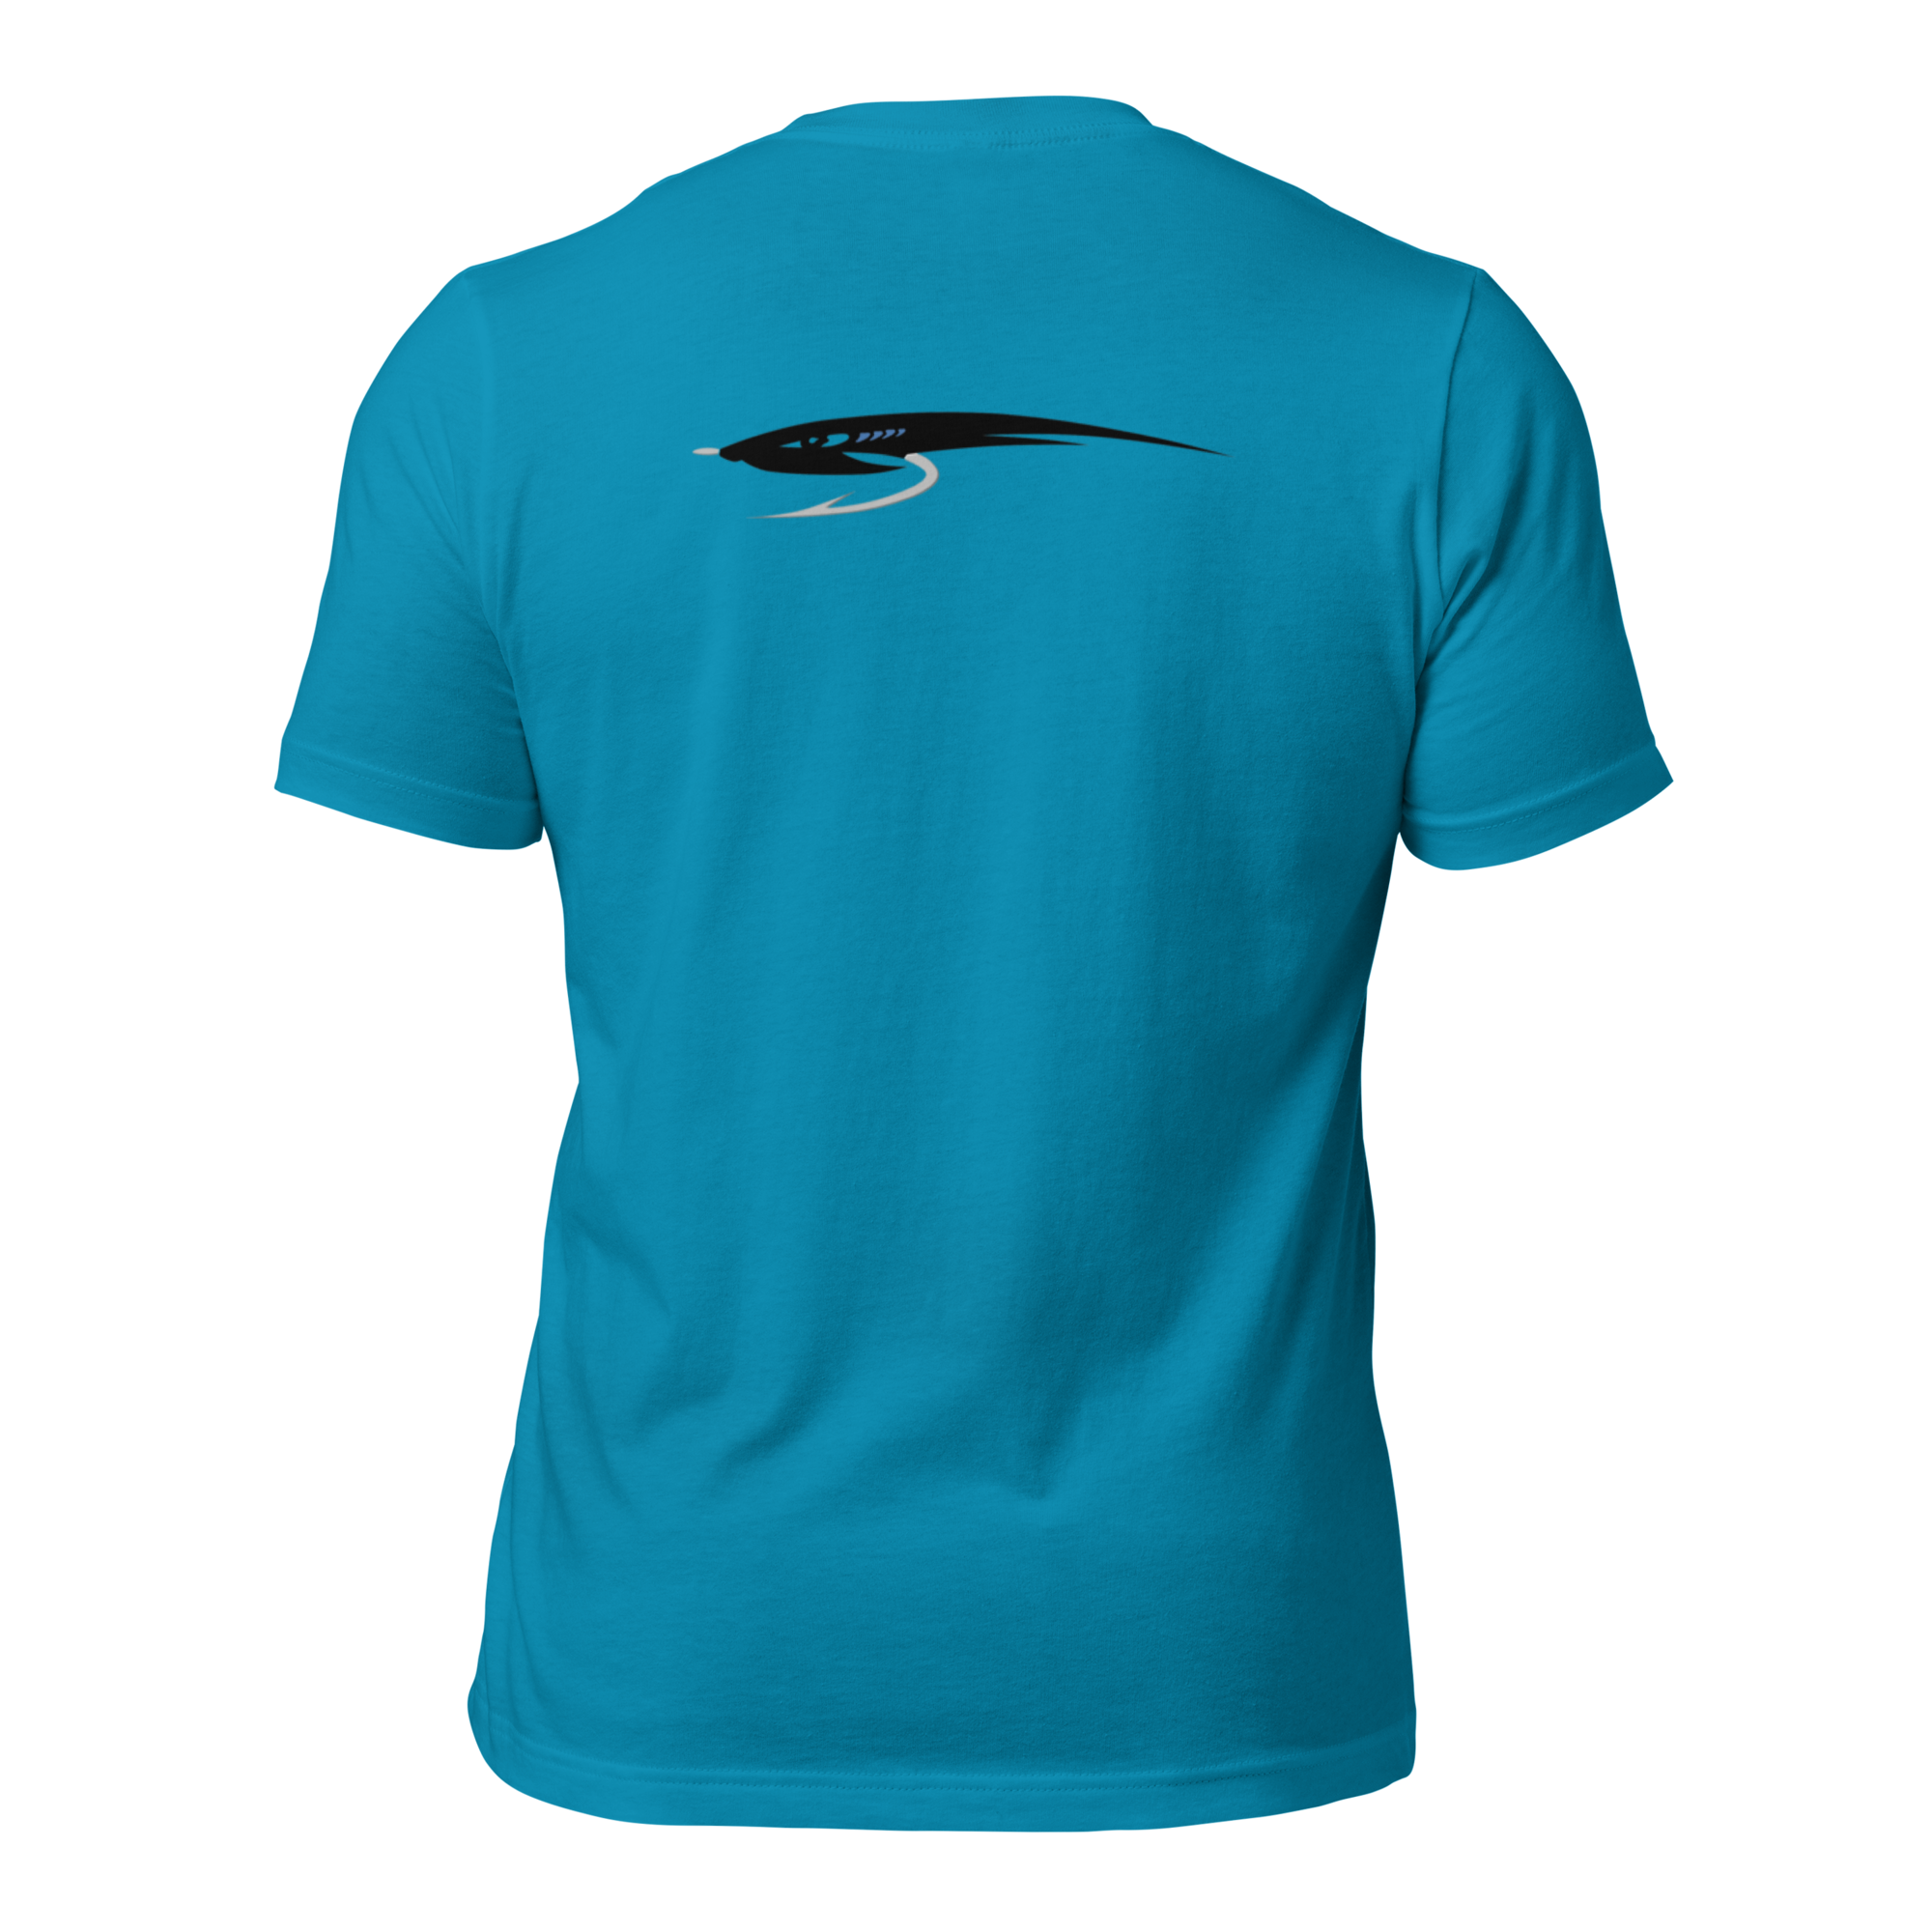 unisex-staple-t-shirt-aqua-back-653fc8c0578ec.png